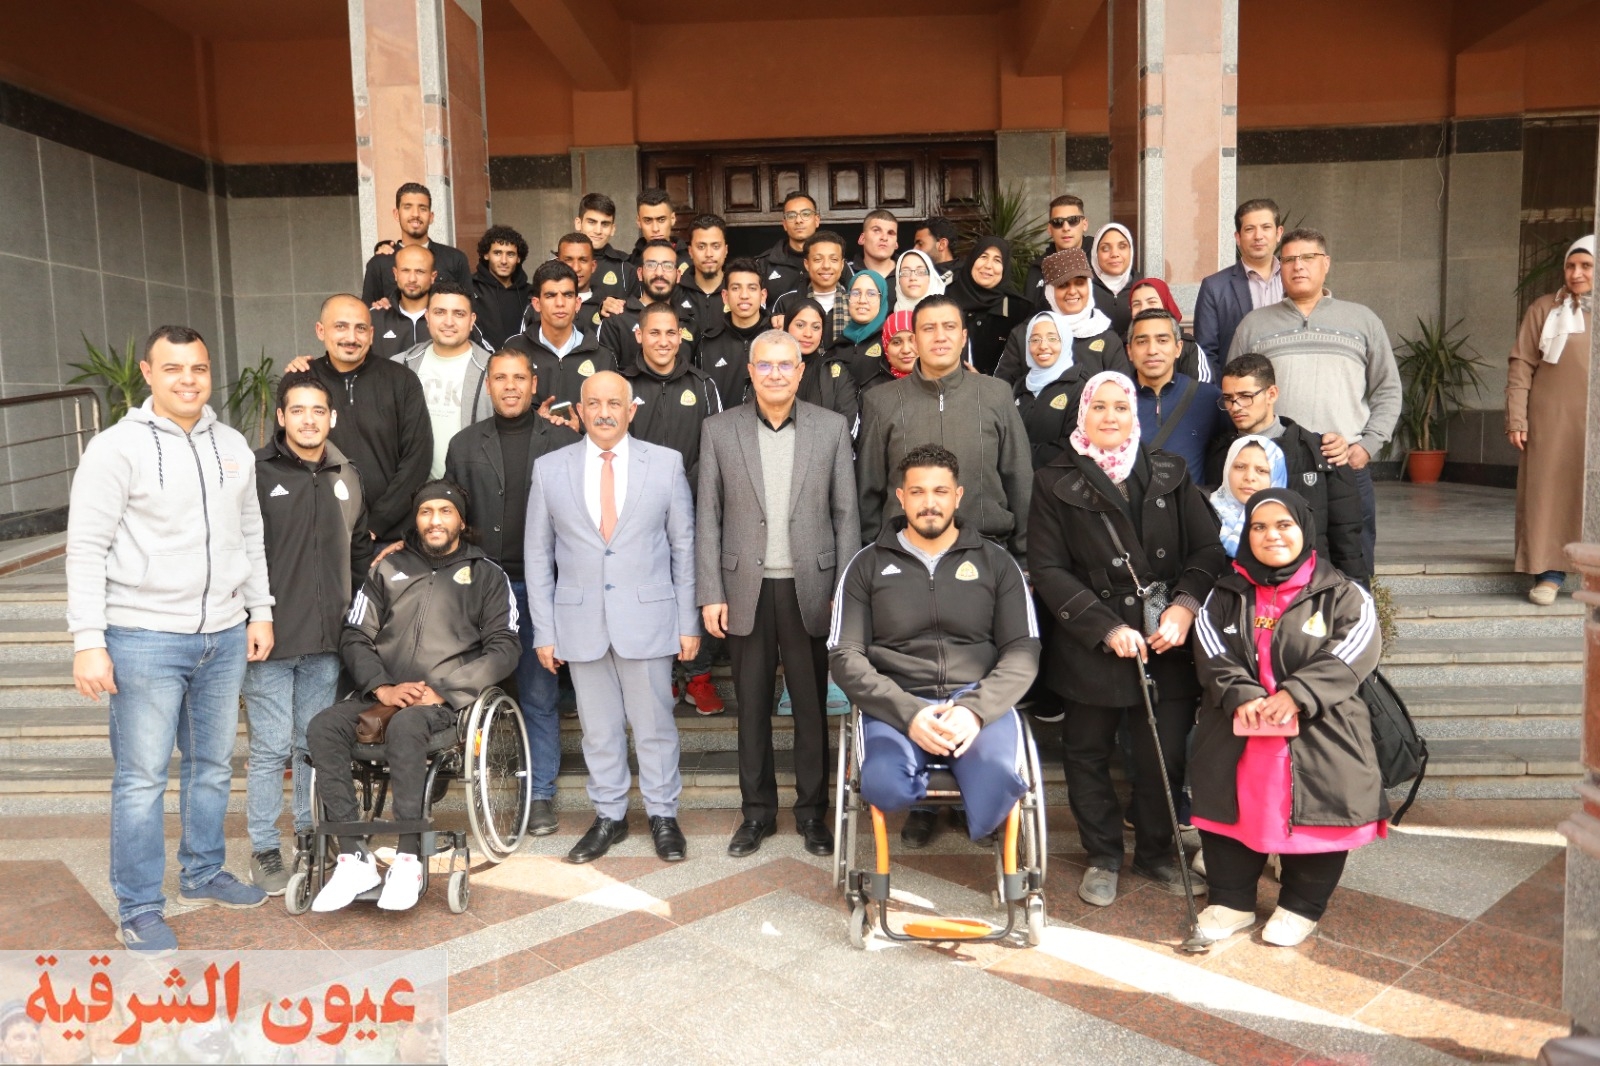 جامعة الزقازيق تشارك بوفد من ذوي الهمم في اللقاء القمي الرياضى للجامعات المصرية بالإسكندرية